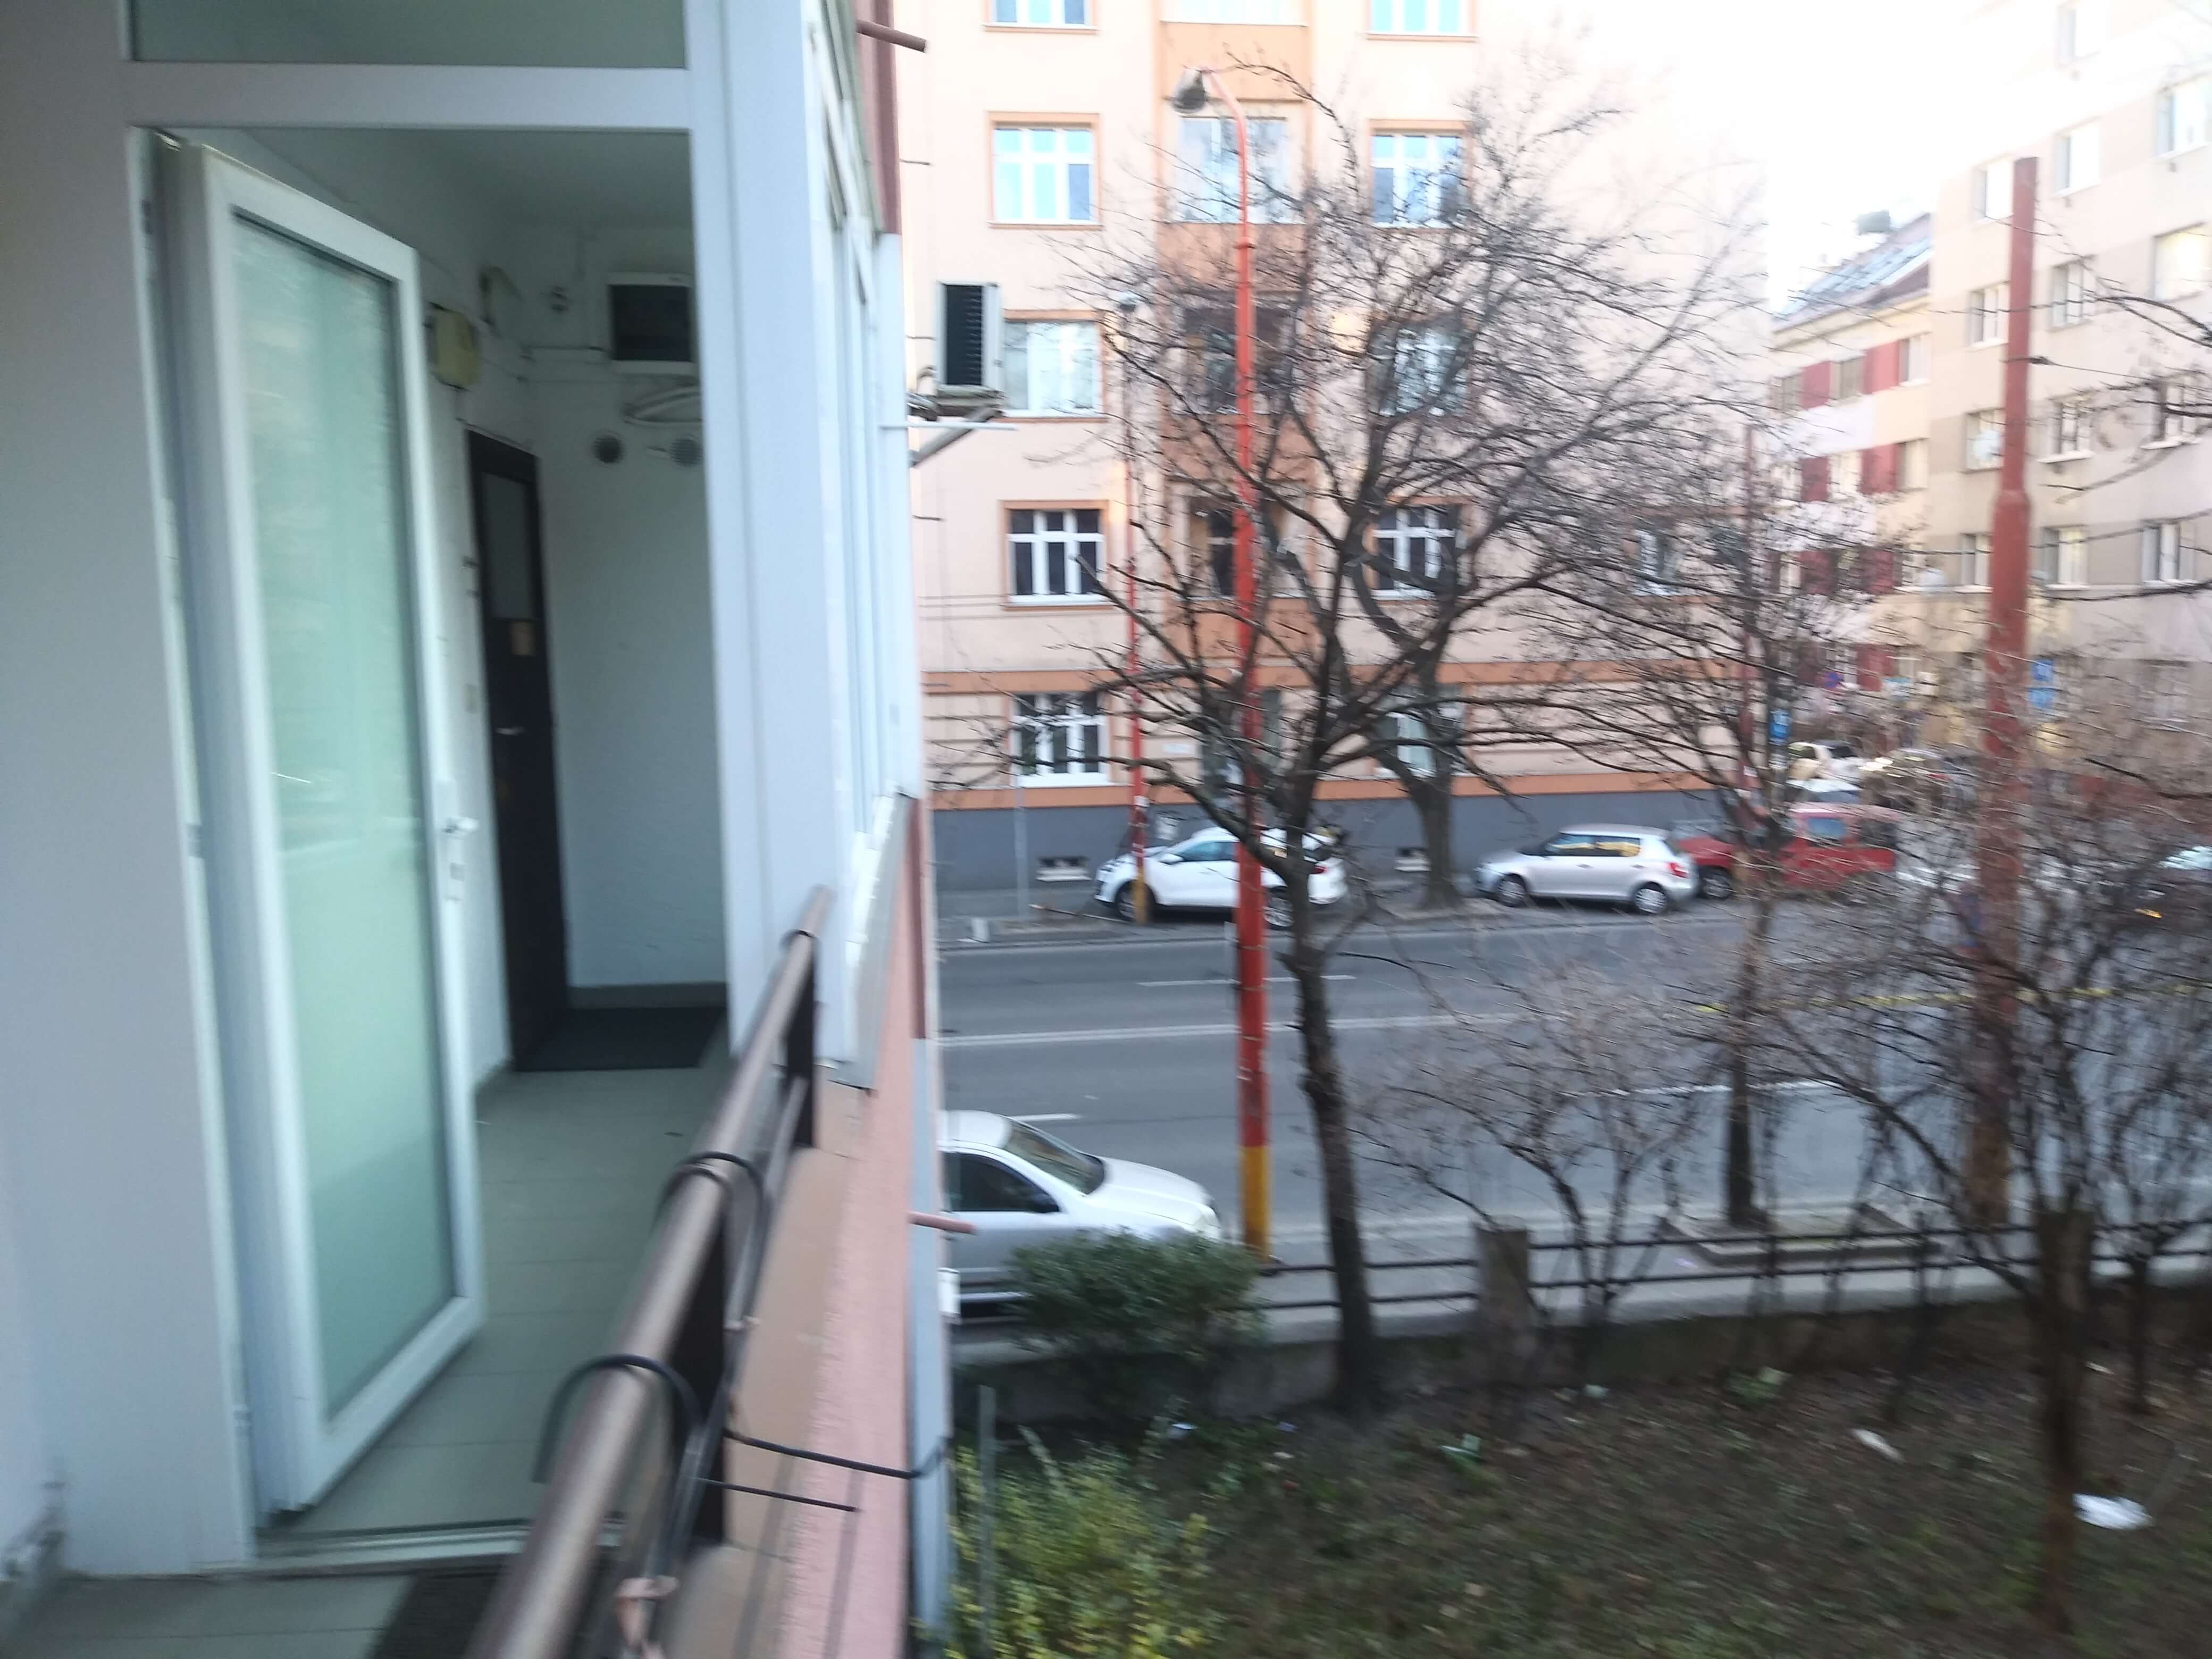 Prenajaté: Prenájom jednej izby v 2 izb. byte, staré mesto, Šancová ulica, Bratislava, 80m2, zariadený-36